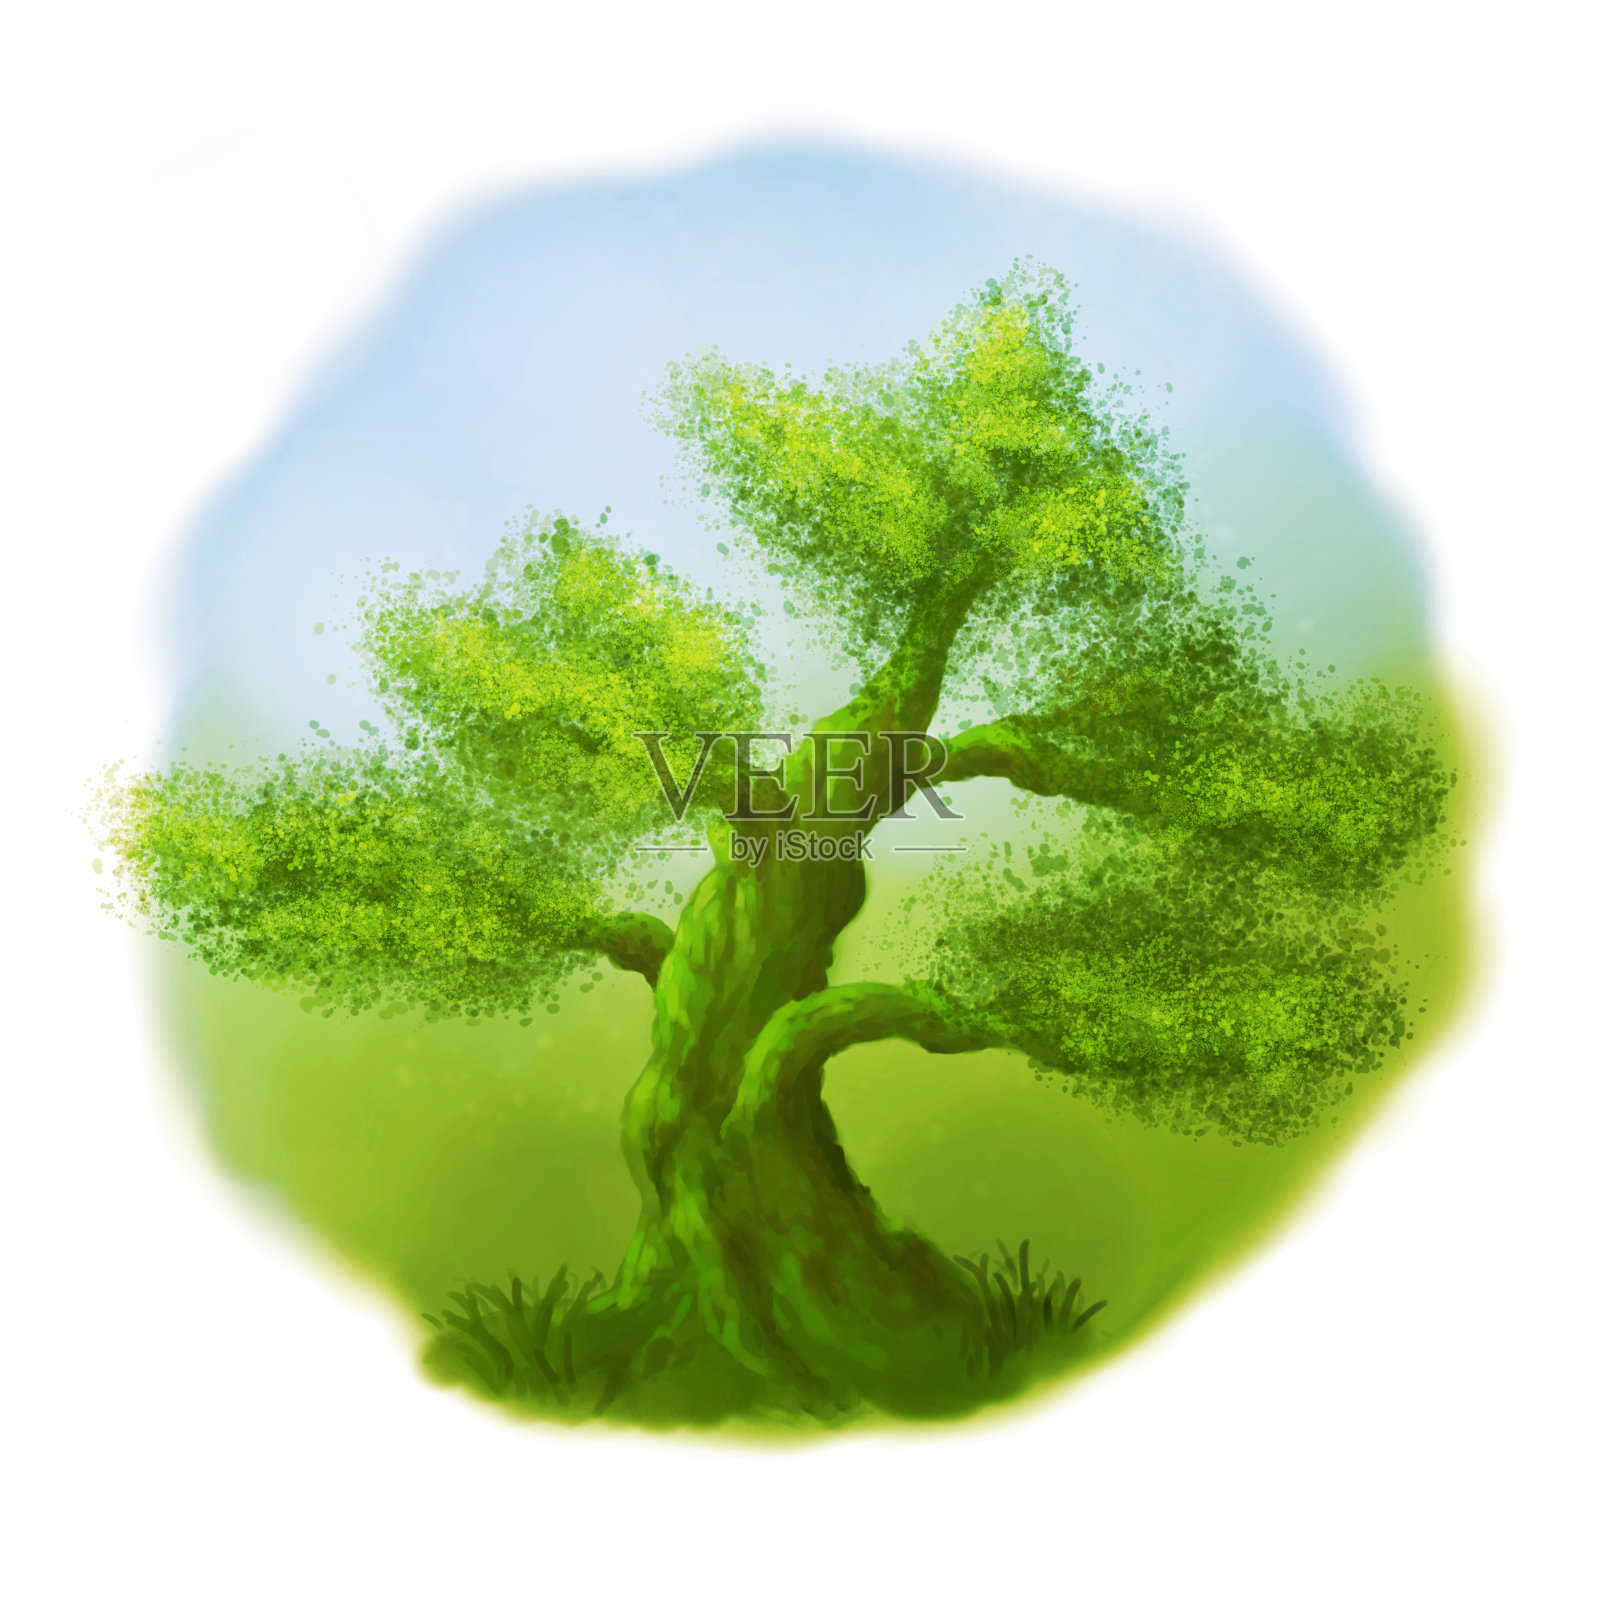 温暖的阳光下，绿树成荫的快乐树插画图片素材